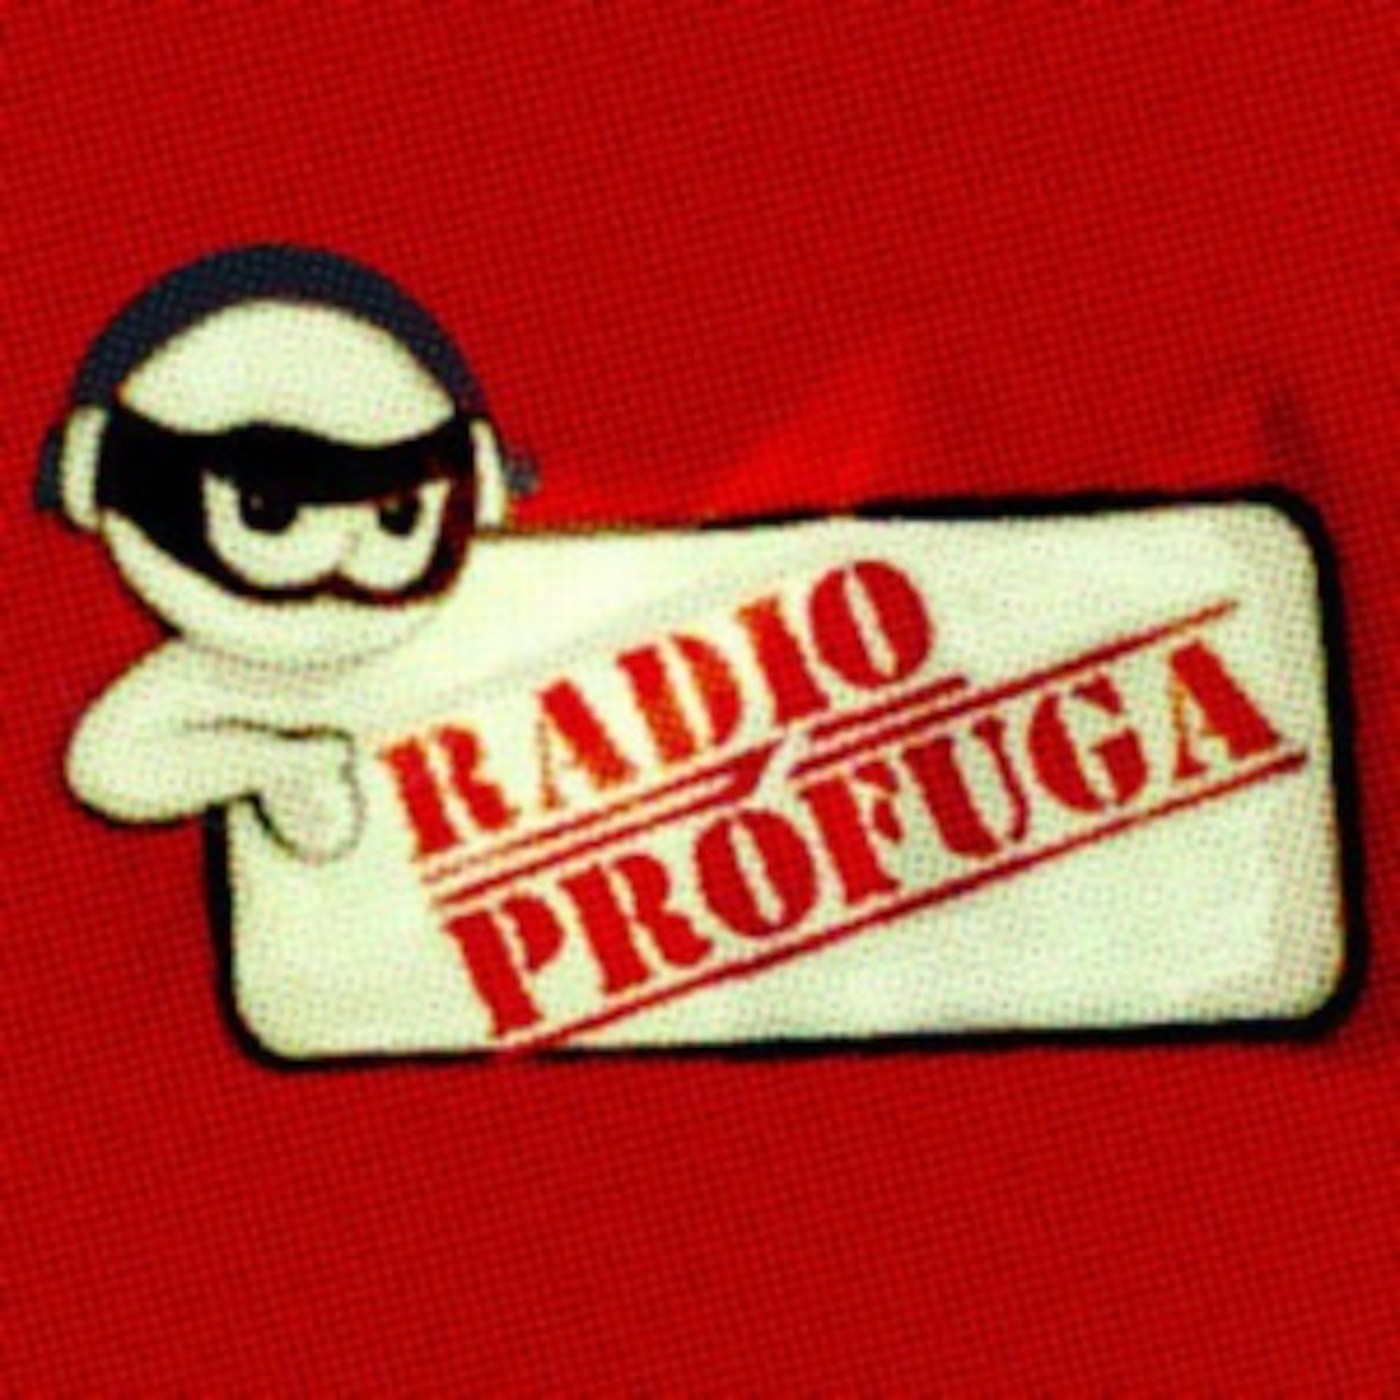 Radio Prófuga